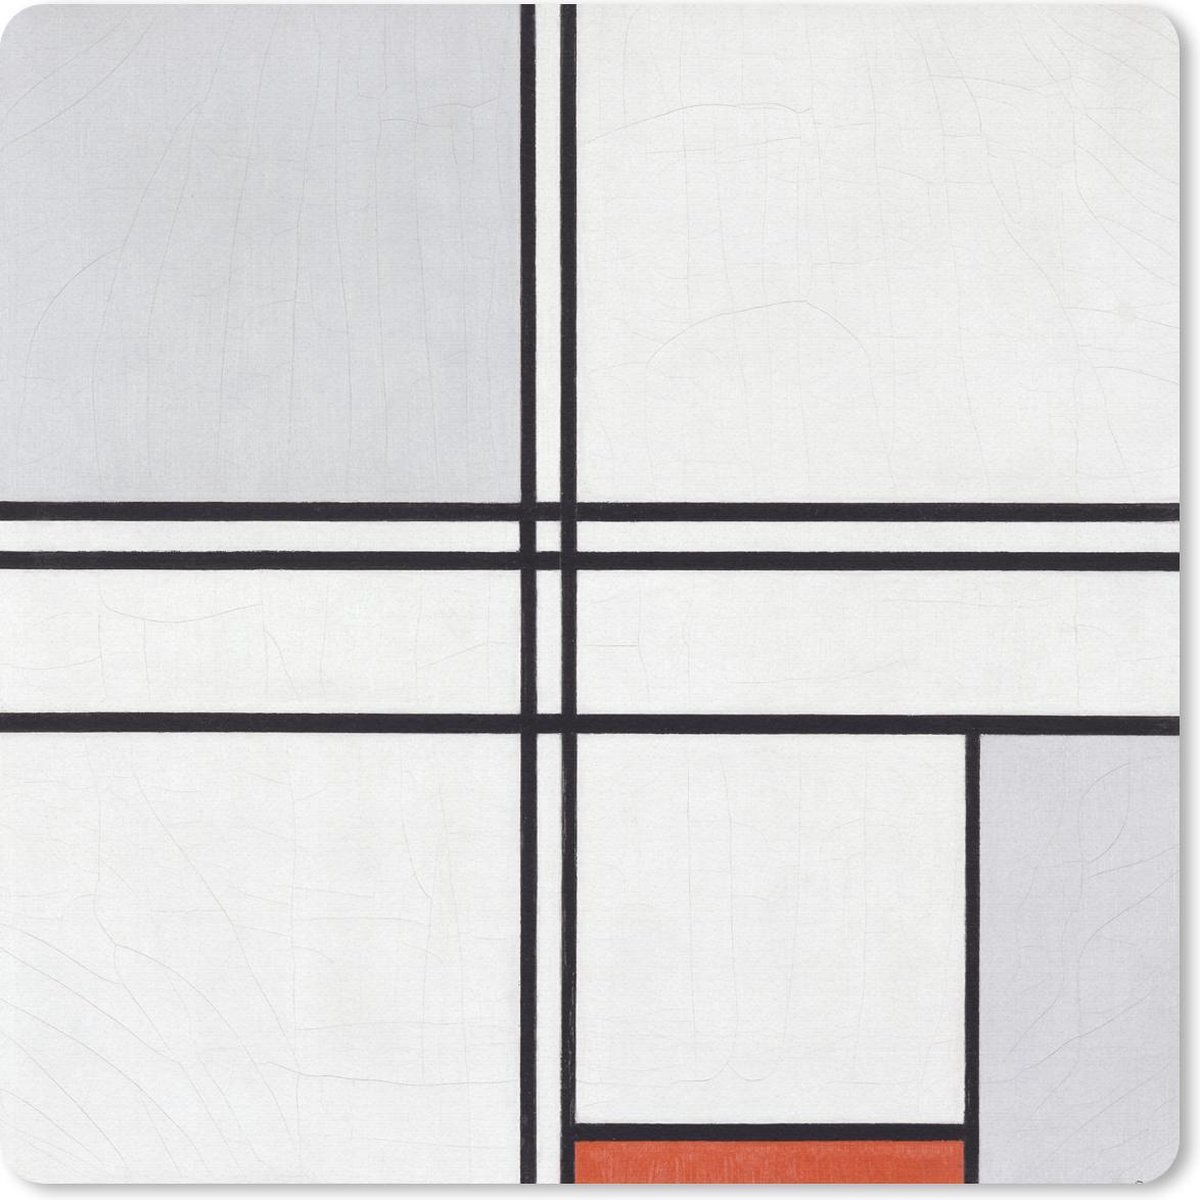 Muismat - Mousepad - Compositie 1 met rood en grijs - Piet Mondriaan - 30x30 cm - Muismatten